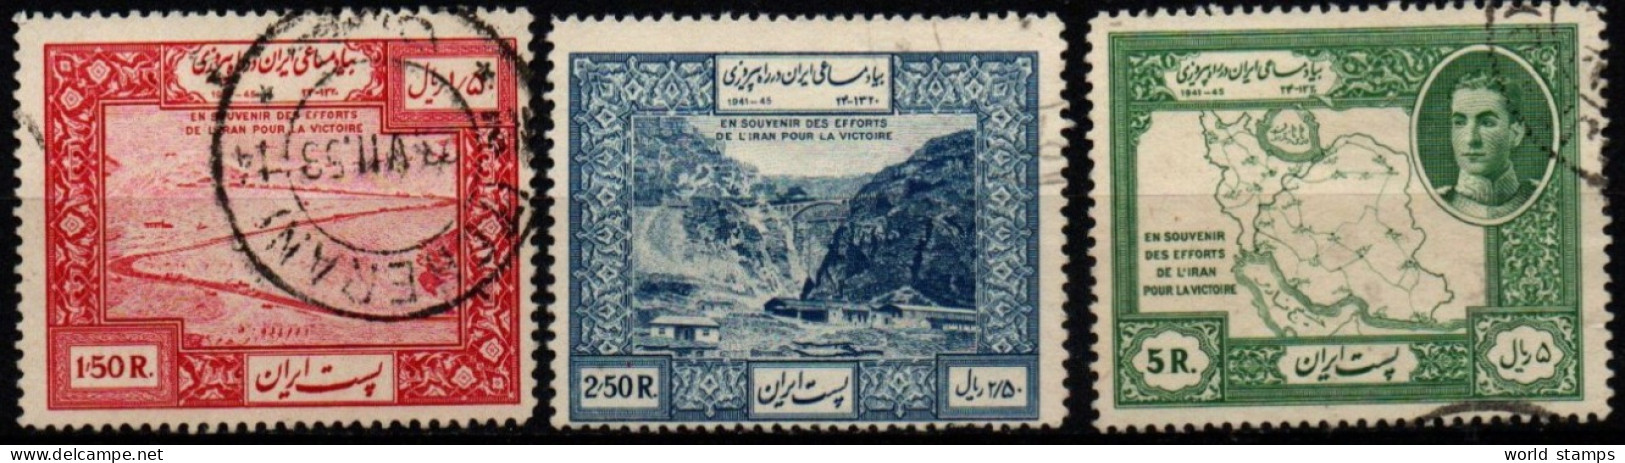 IRAN 1949 O - Irán